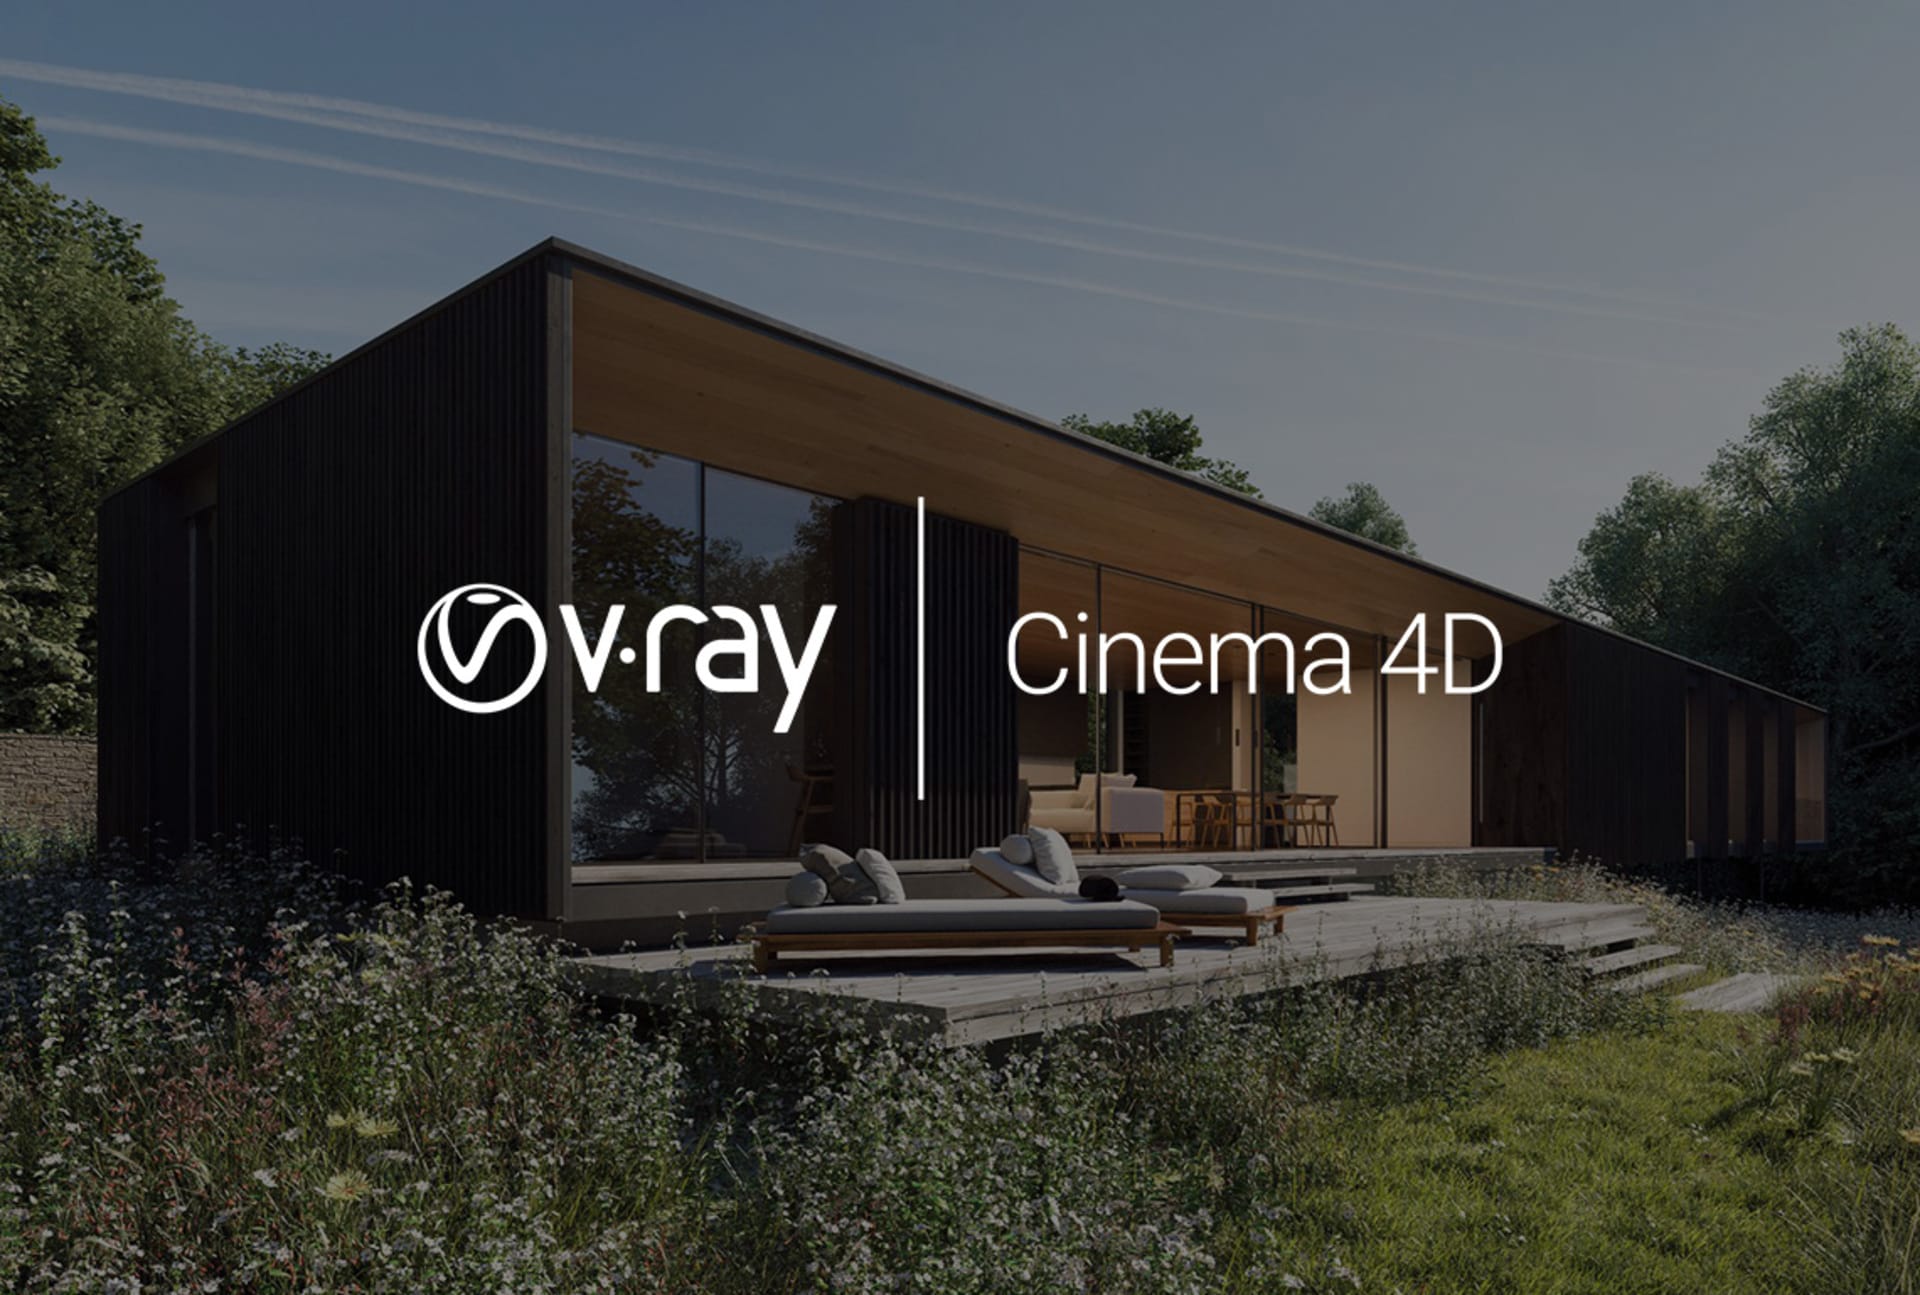  Cinema 4D Vray GPU rendering